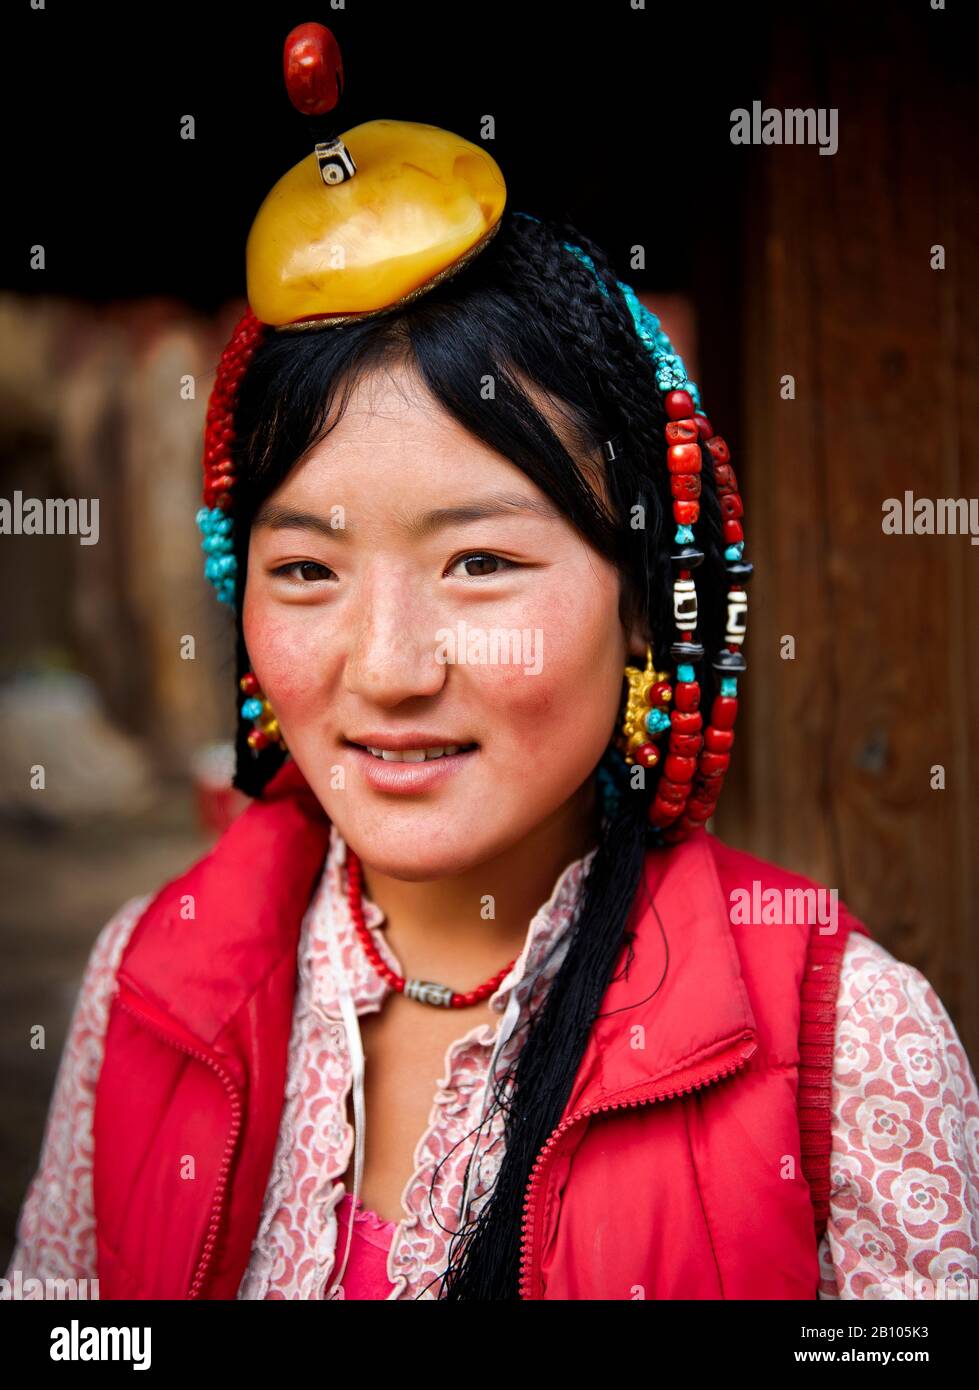 Alcune famiglie si sforzano di preservare le loro tradizioni. I costumi e i modi di vestirsi e di accesare sono di generazione in generazione. Altopiano tibetano remoto Foto Stock